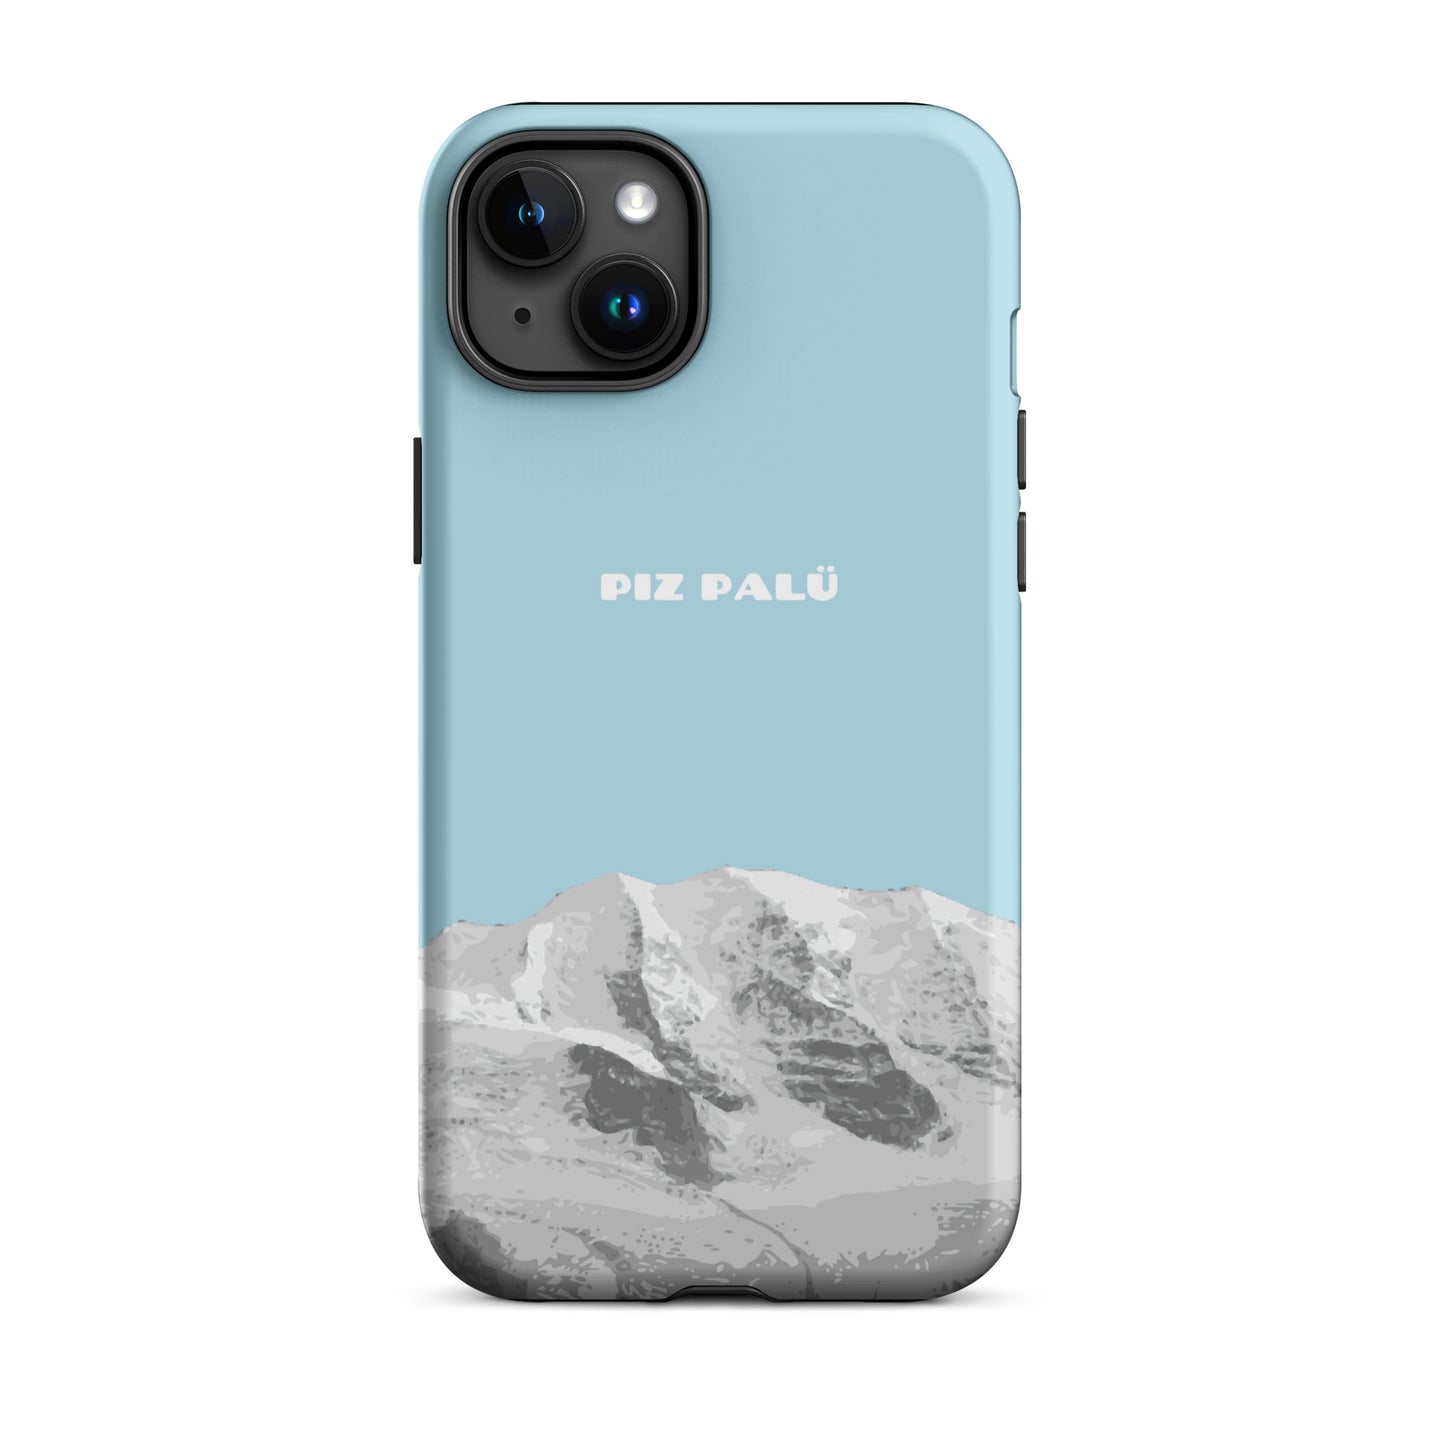 Hülle für das iPhone 15 Plus von Apple in der Farbe Hellblau, dass den Piz Palü in Graubünden zeigt.